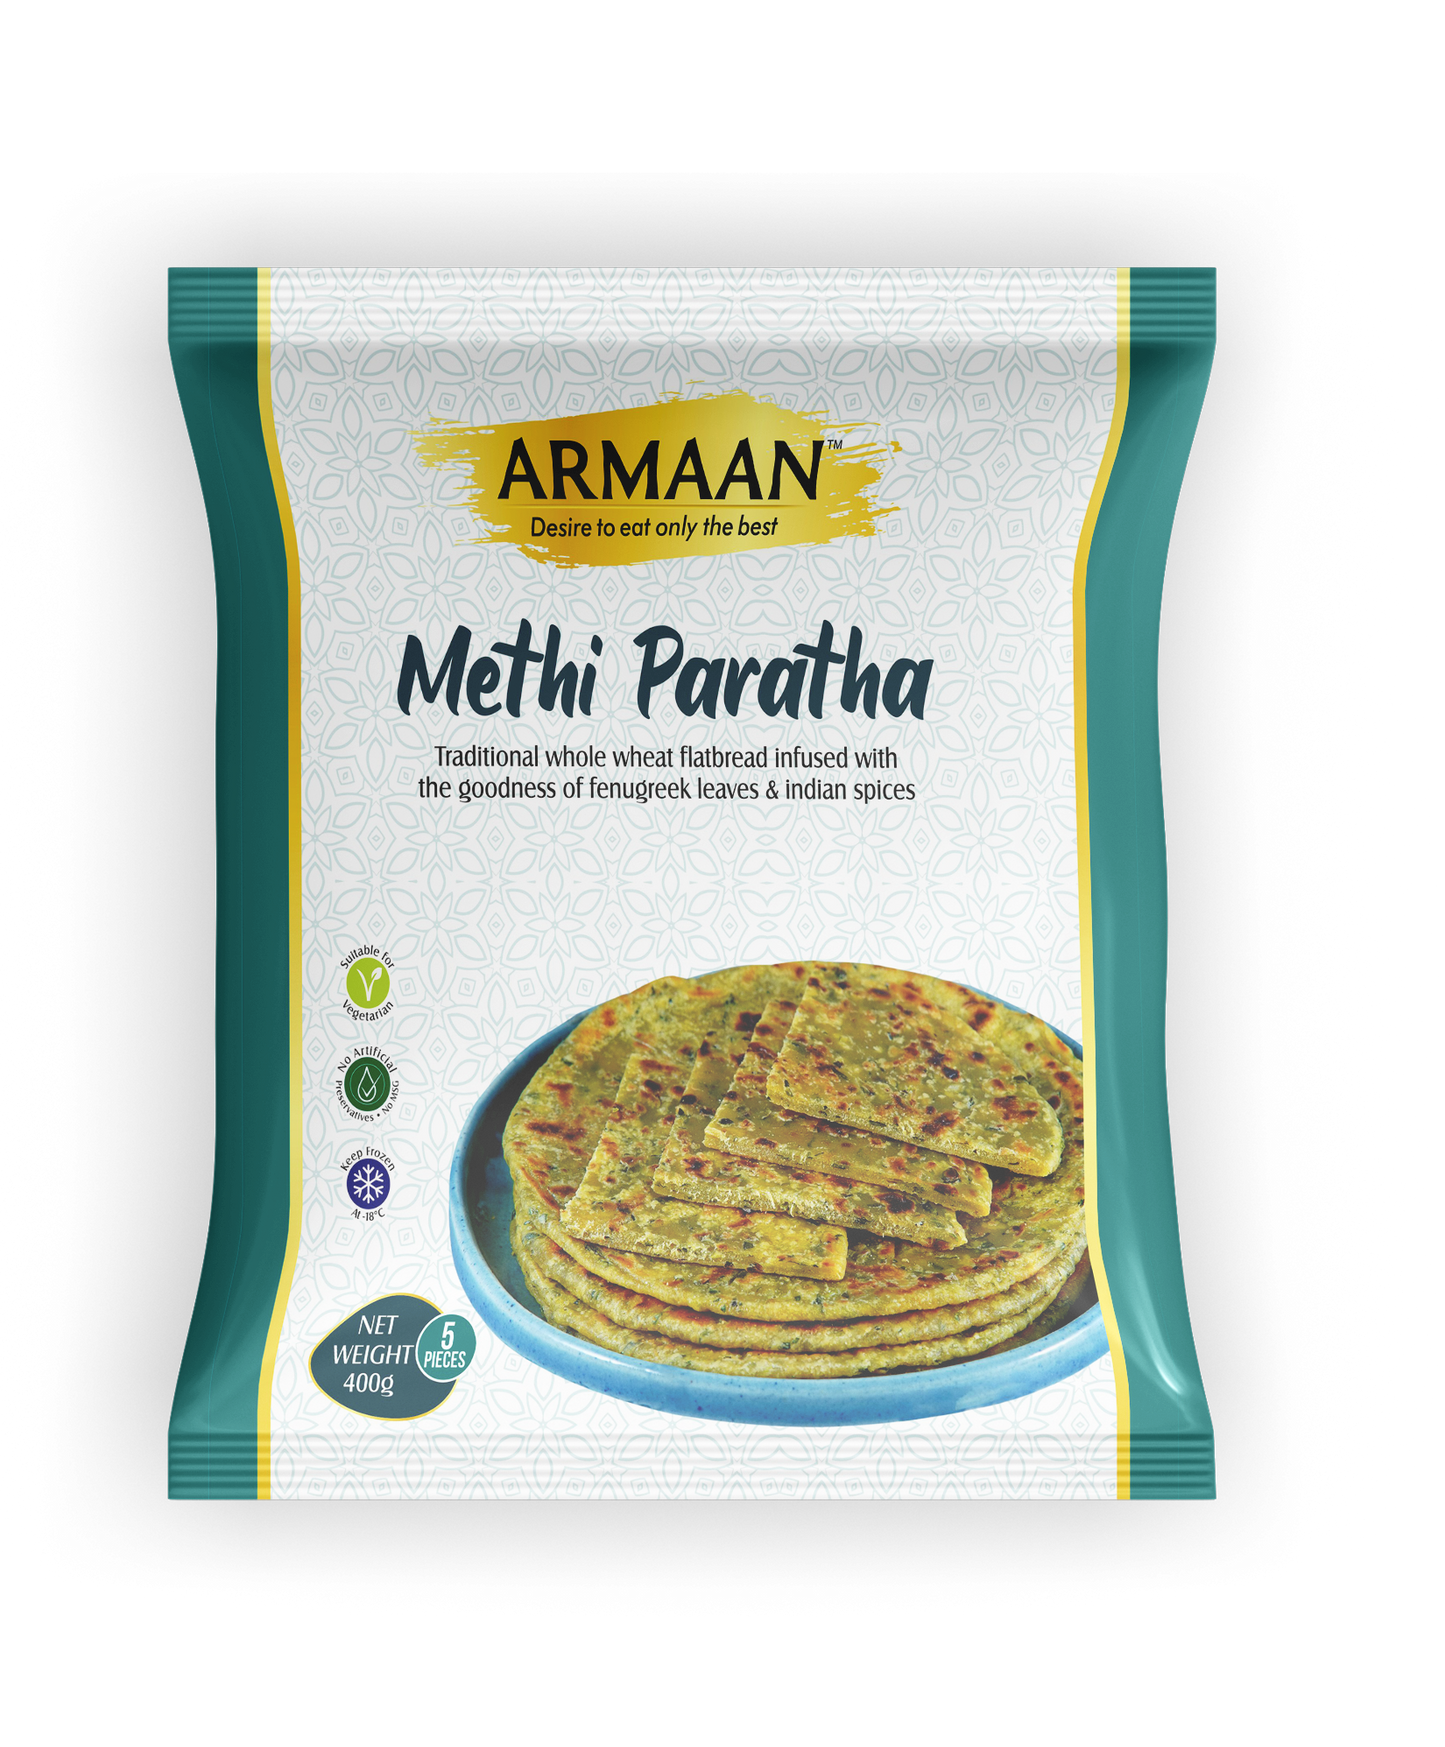 Armaan Stuffed Methi Paratha 400g